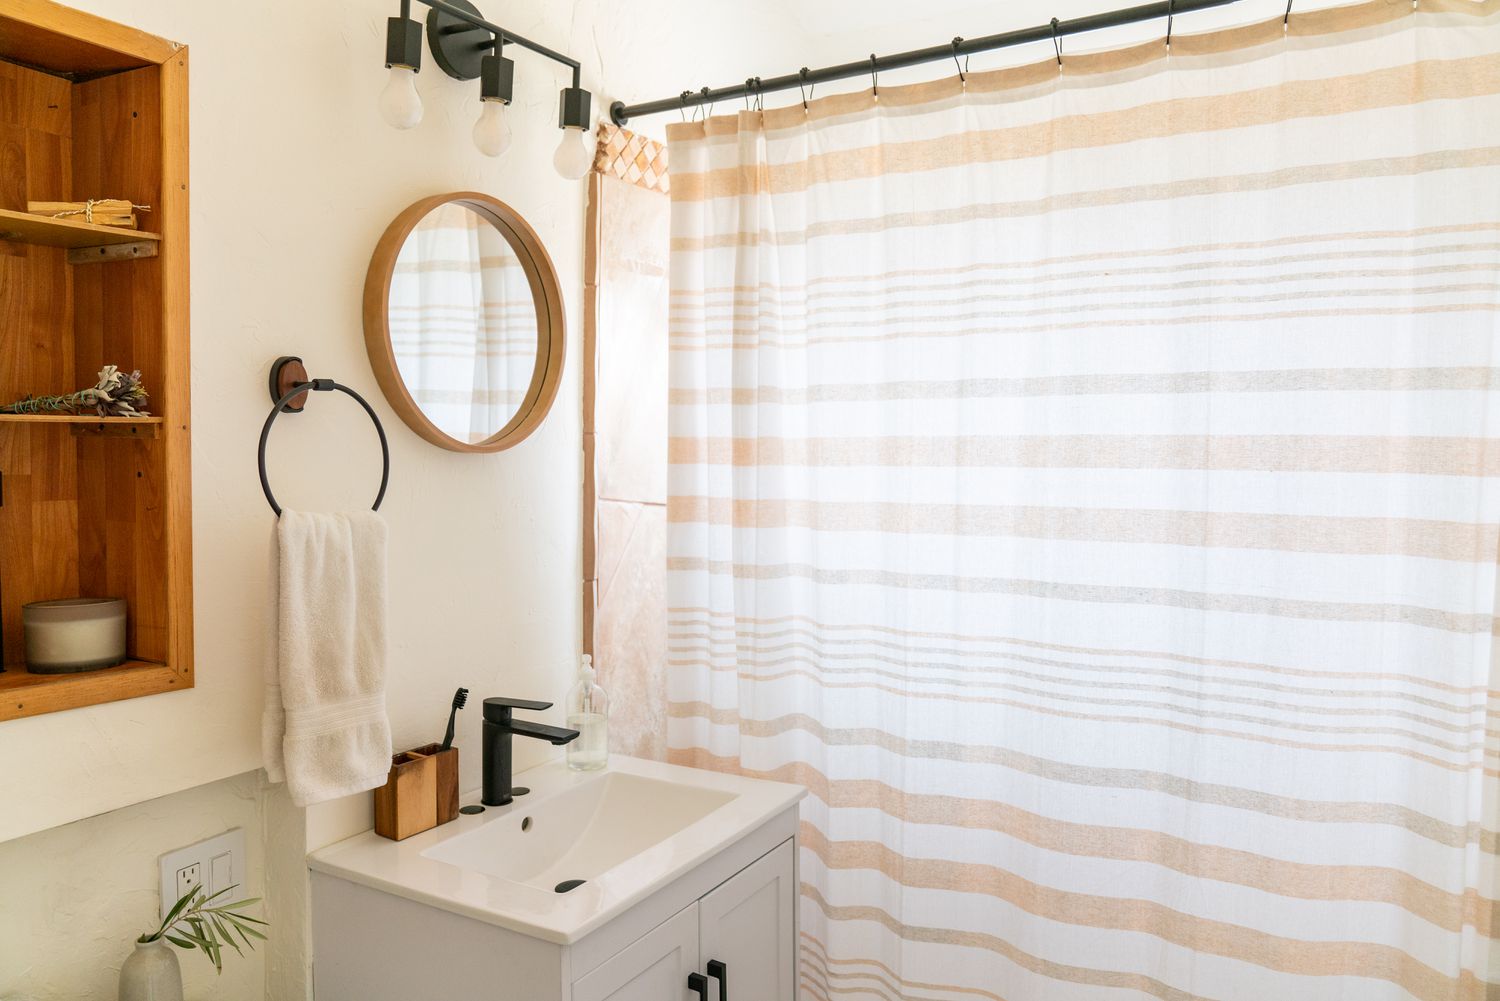 Petite salle de bain avec petit miroir rond à côté du rideau de douche blanc et tan